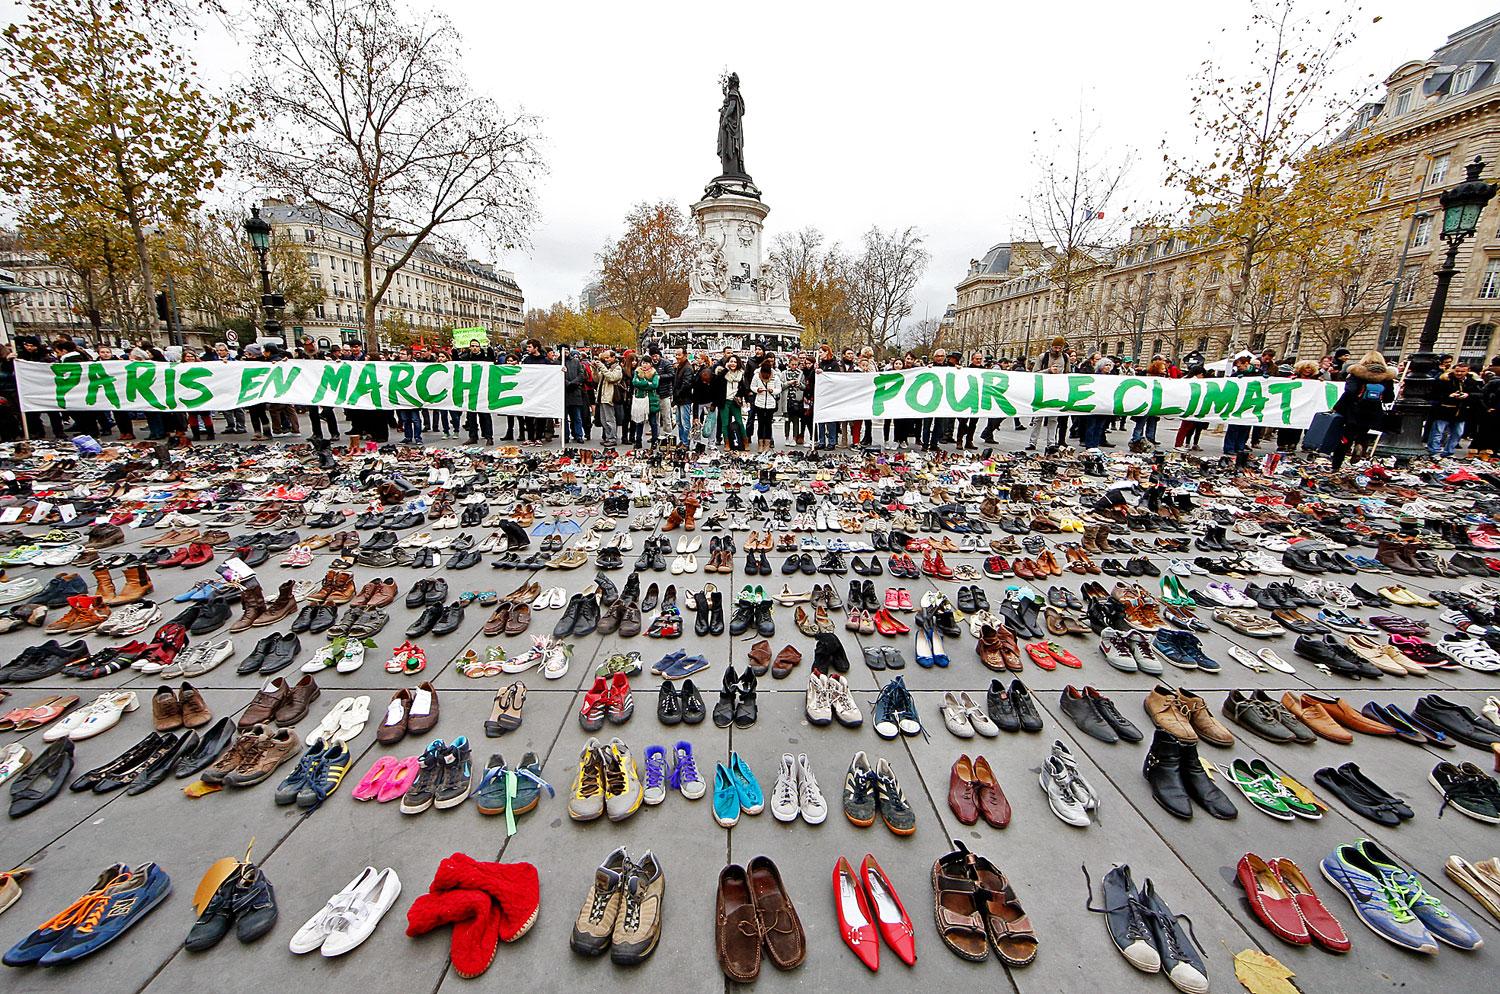 Párizsban a merényletek miatt gyülekezési tilalom van, ezért kihelyezett cipőkkel demonstráltak a környezetvédők